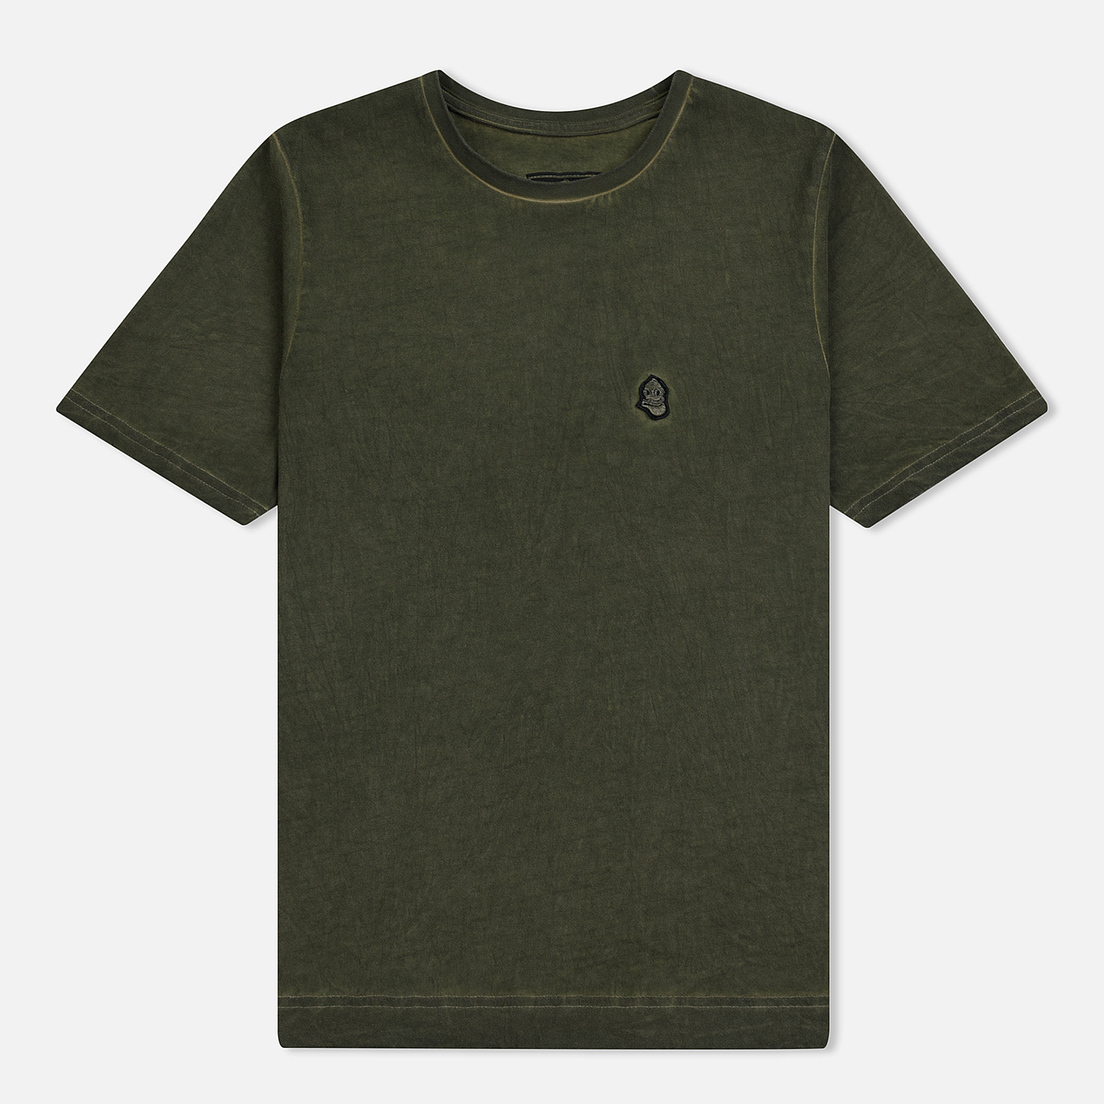 Submariner Мужская футболка Garment Dyed Vintage Effect